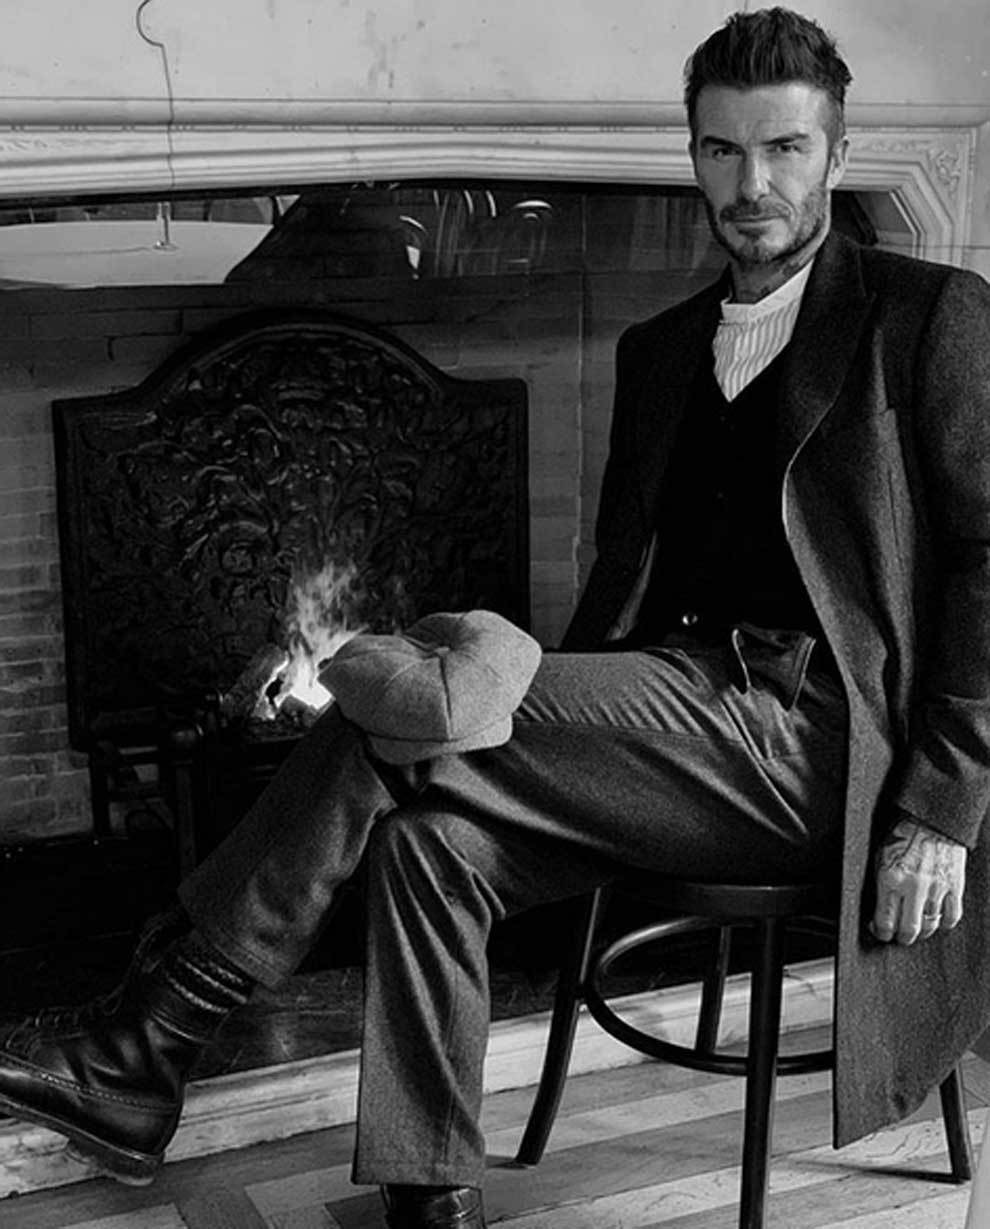 Peaky Blinders, la inspiración tras el look (y una nueva colección) de David Beckham